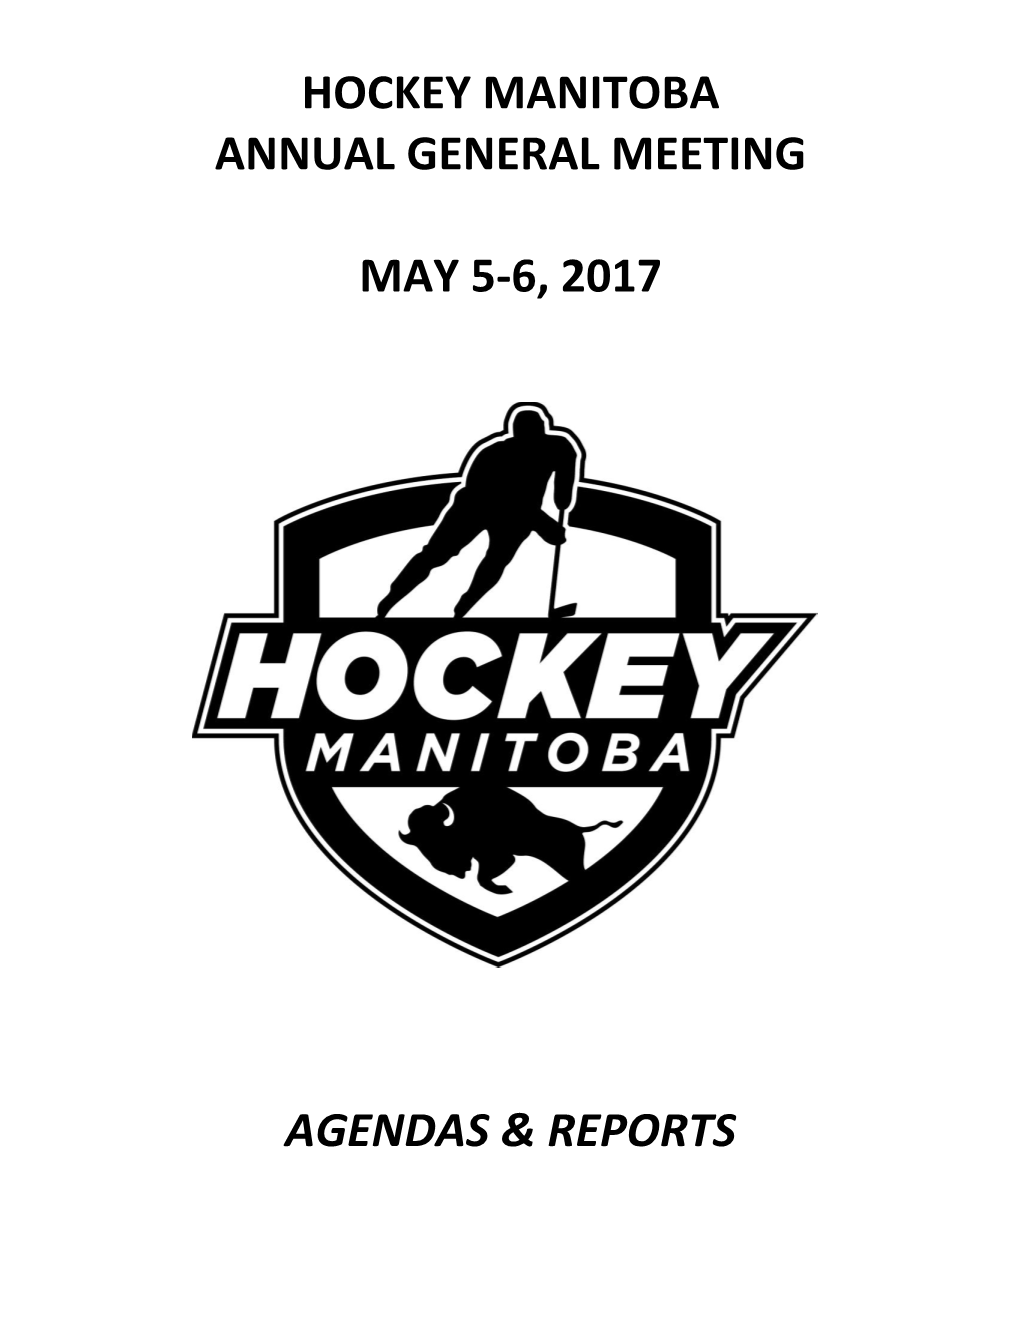 Hockey Manitoba Annual General Meeting May 5-6